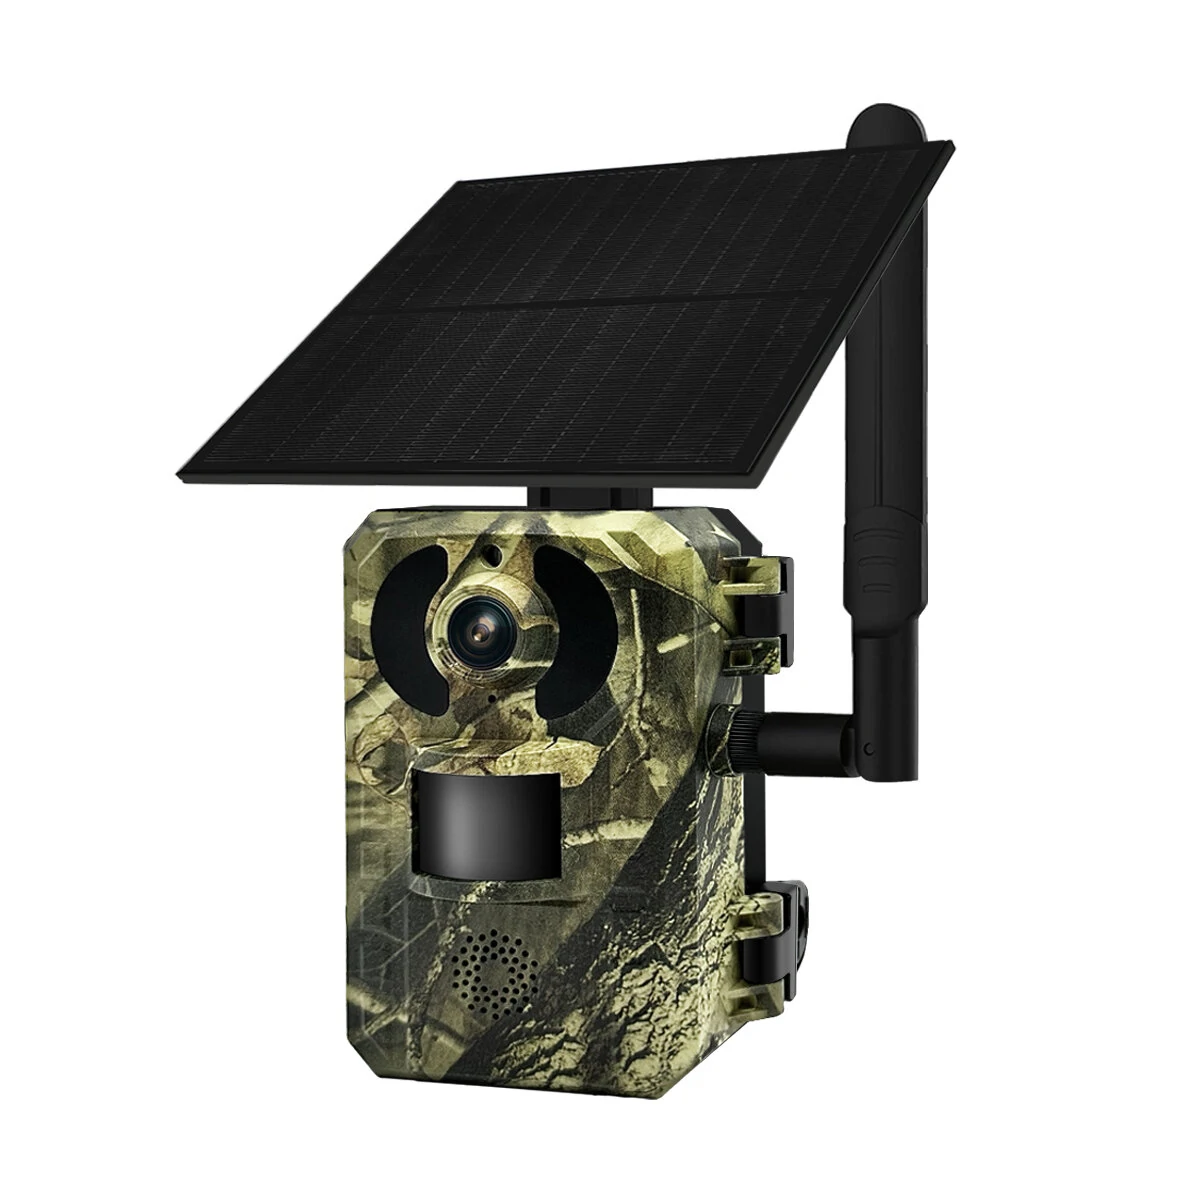 Χαμηλότερη τιμή ως σήμερα στα 76,39€ από αποθήκη Κίνας | ESCAM QF380 4G 1440P 16MP Hunting Camera Wireless PIR Motion Detection Night Vision Two-way Audio IP66 Solar Powered Wild Animal Monitoring Cameras EU Version